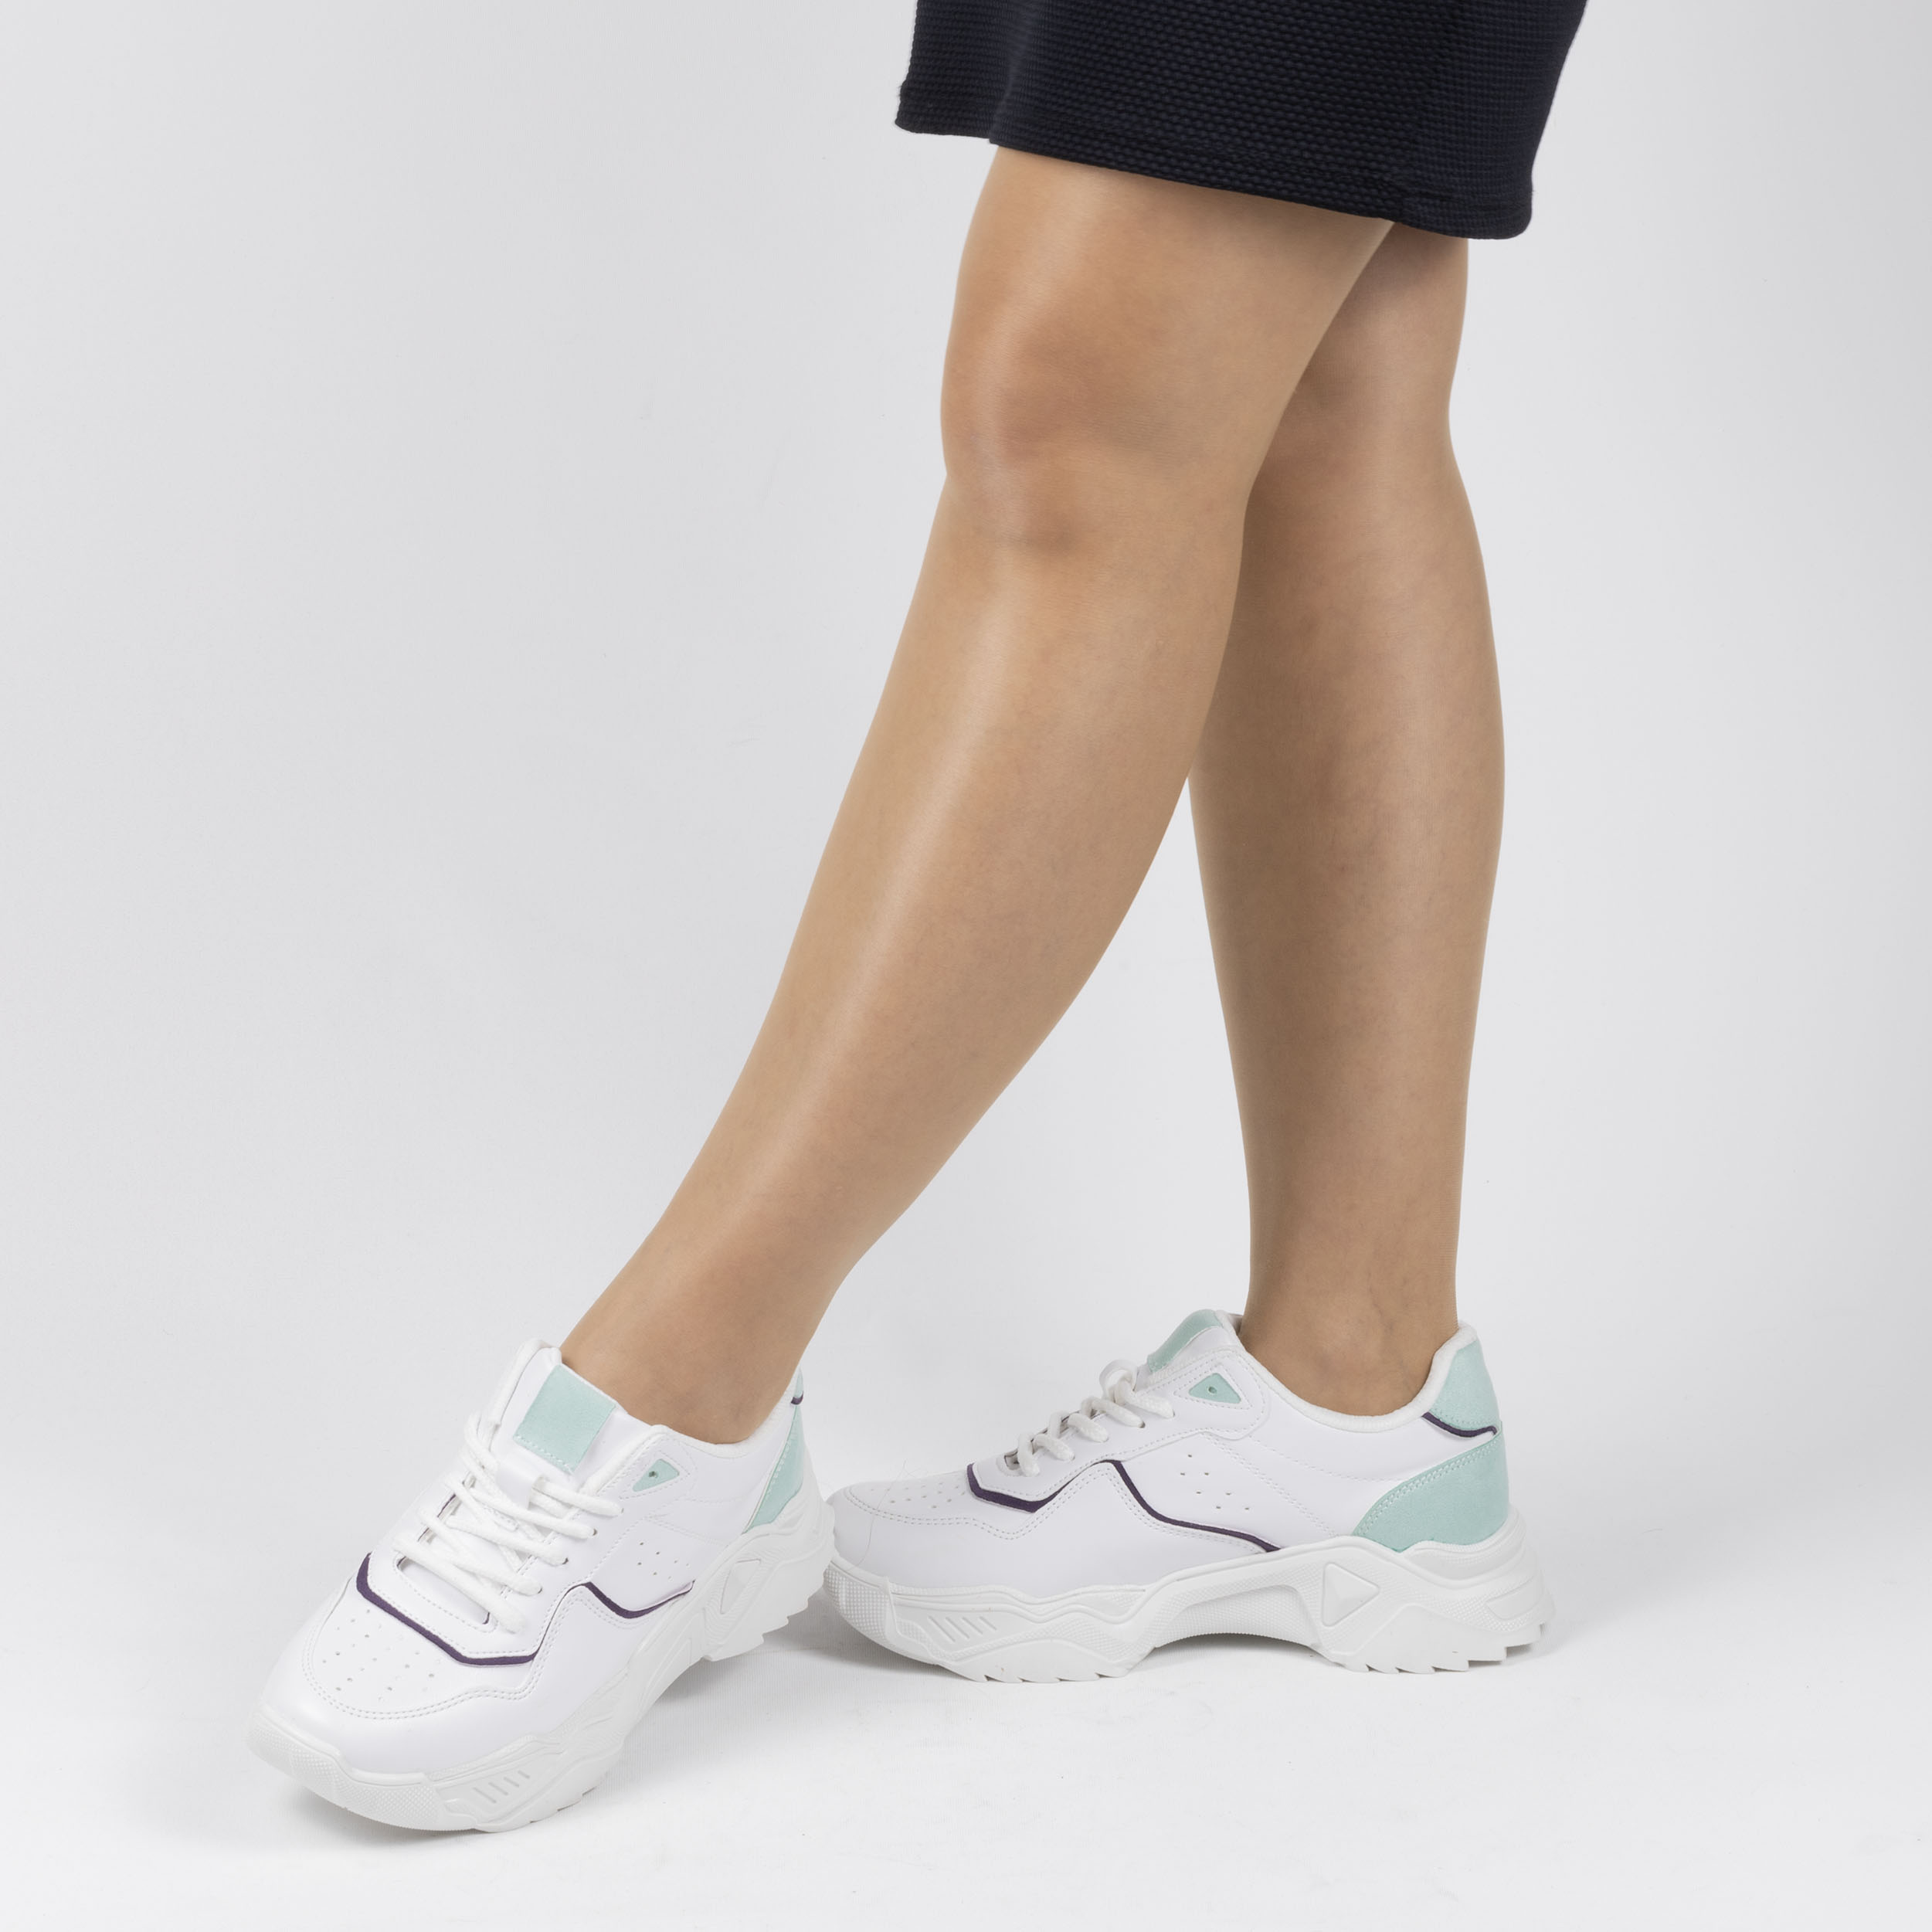 Kadın Günlük Beyaz Bağcıklı Dört Mevsim Kalın Tabanlı 5 Cm Spor Ayakkabı Sneakers, Renk: Beyaz, Beden: 38